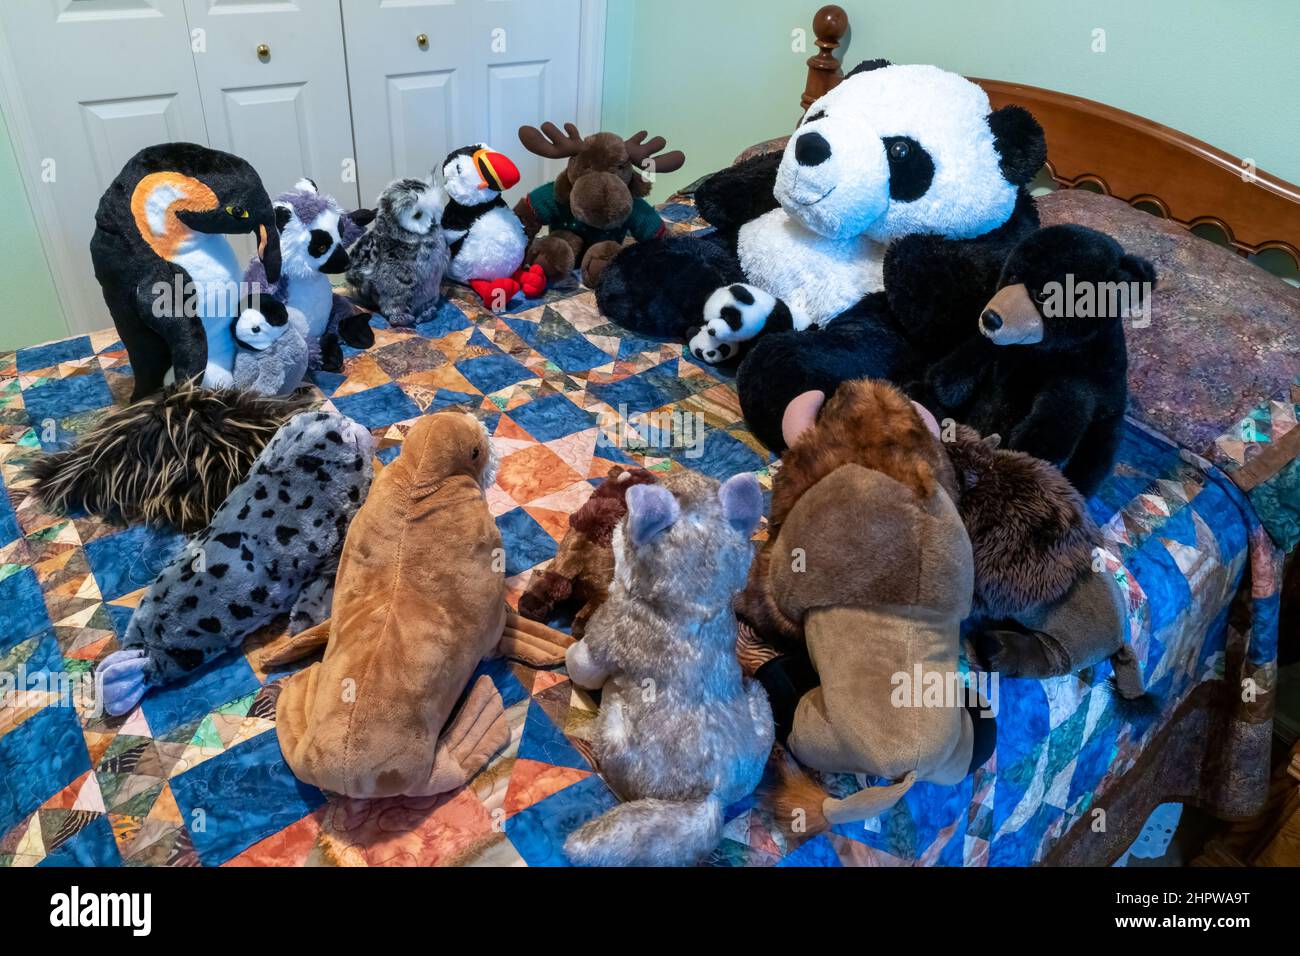 Ausgestopfte Tiere versammelten sich auf einem Bett, um Geschichten zu erzählen. Stockfoto